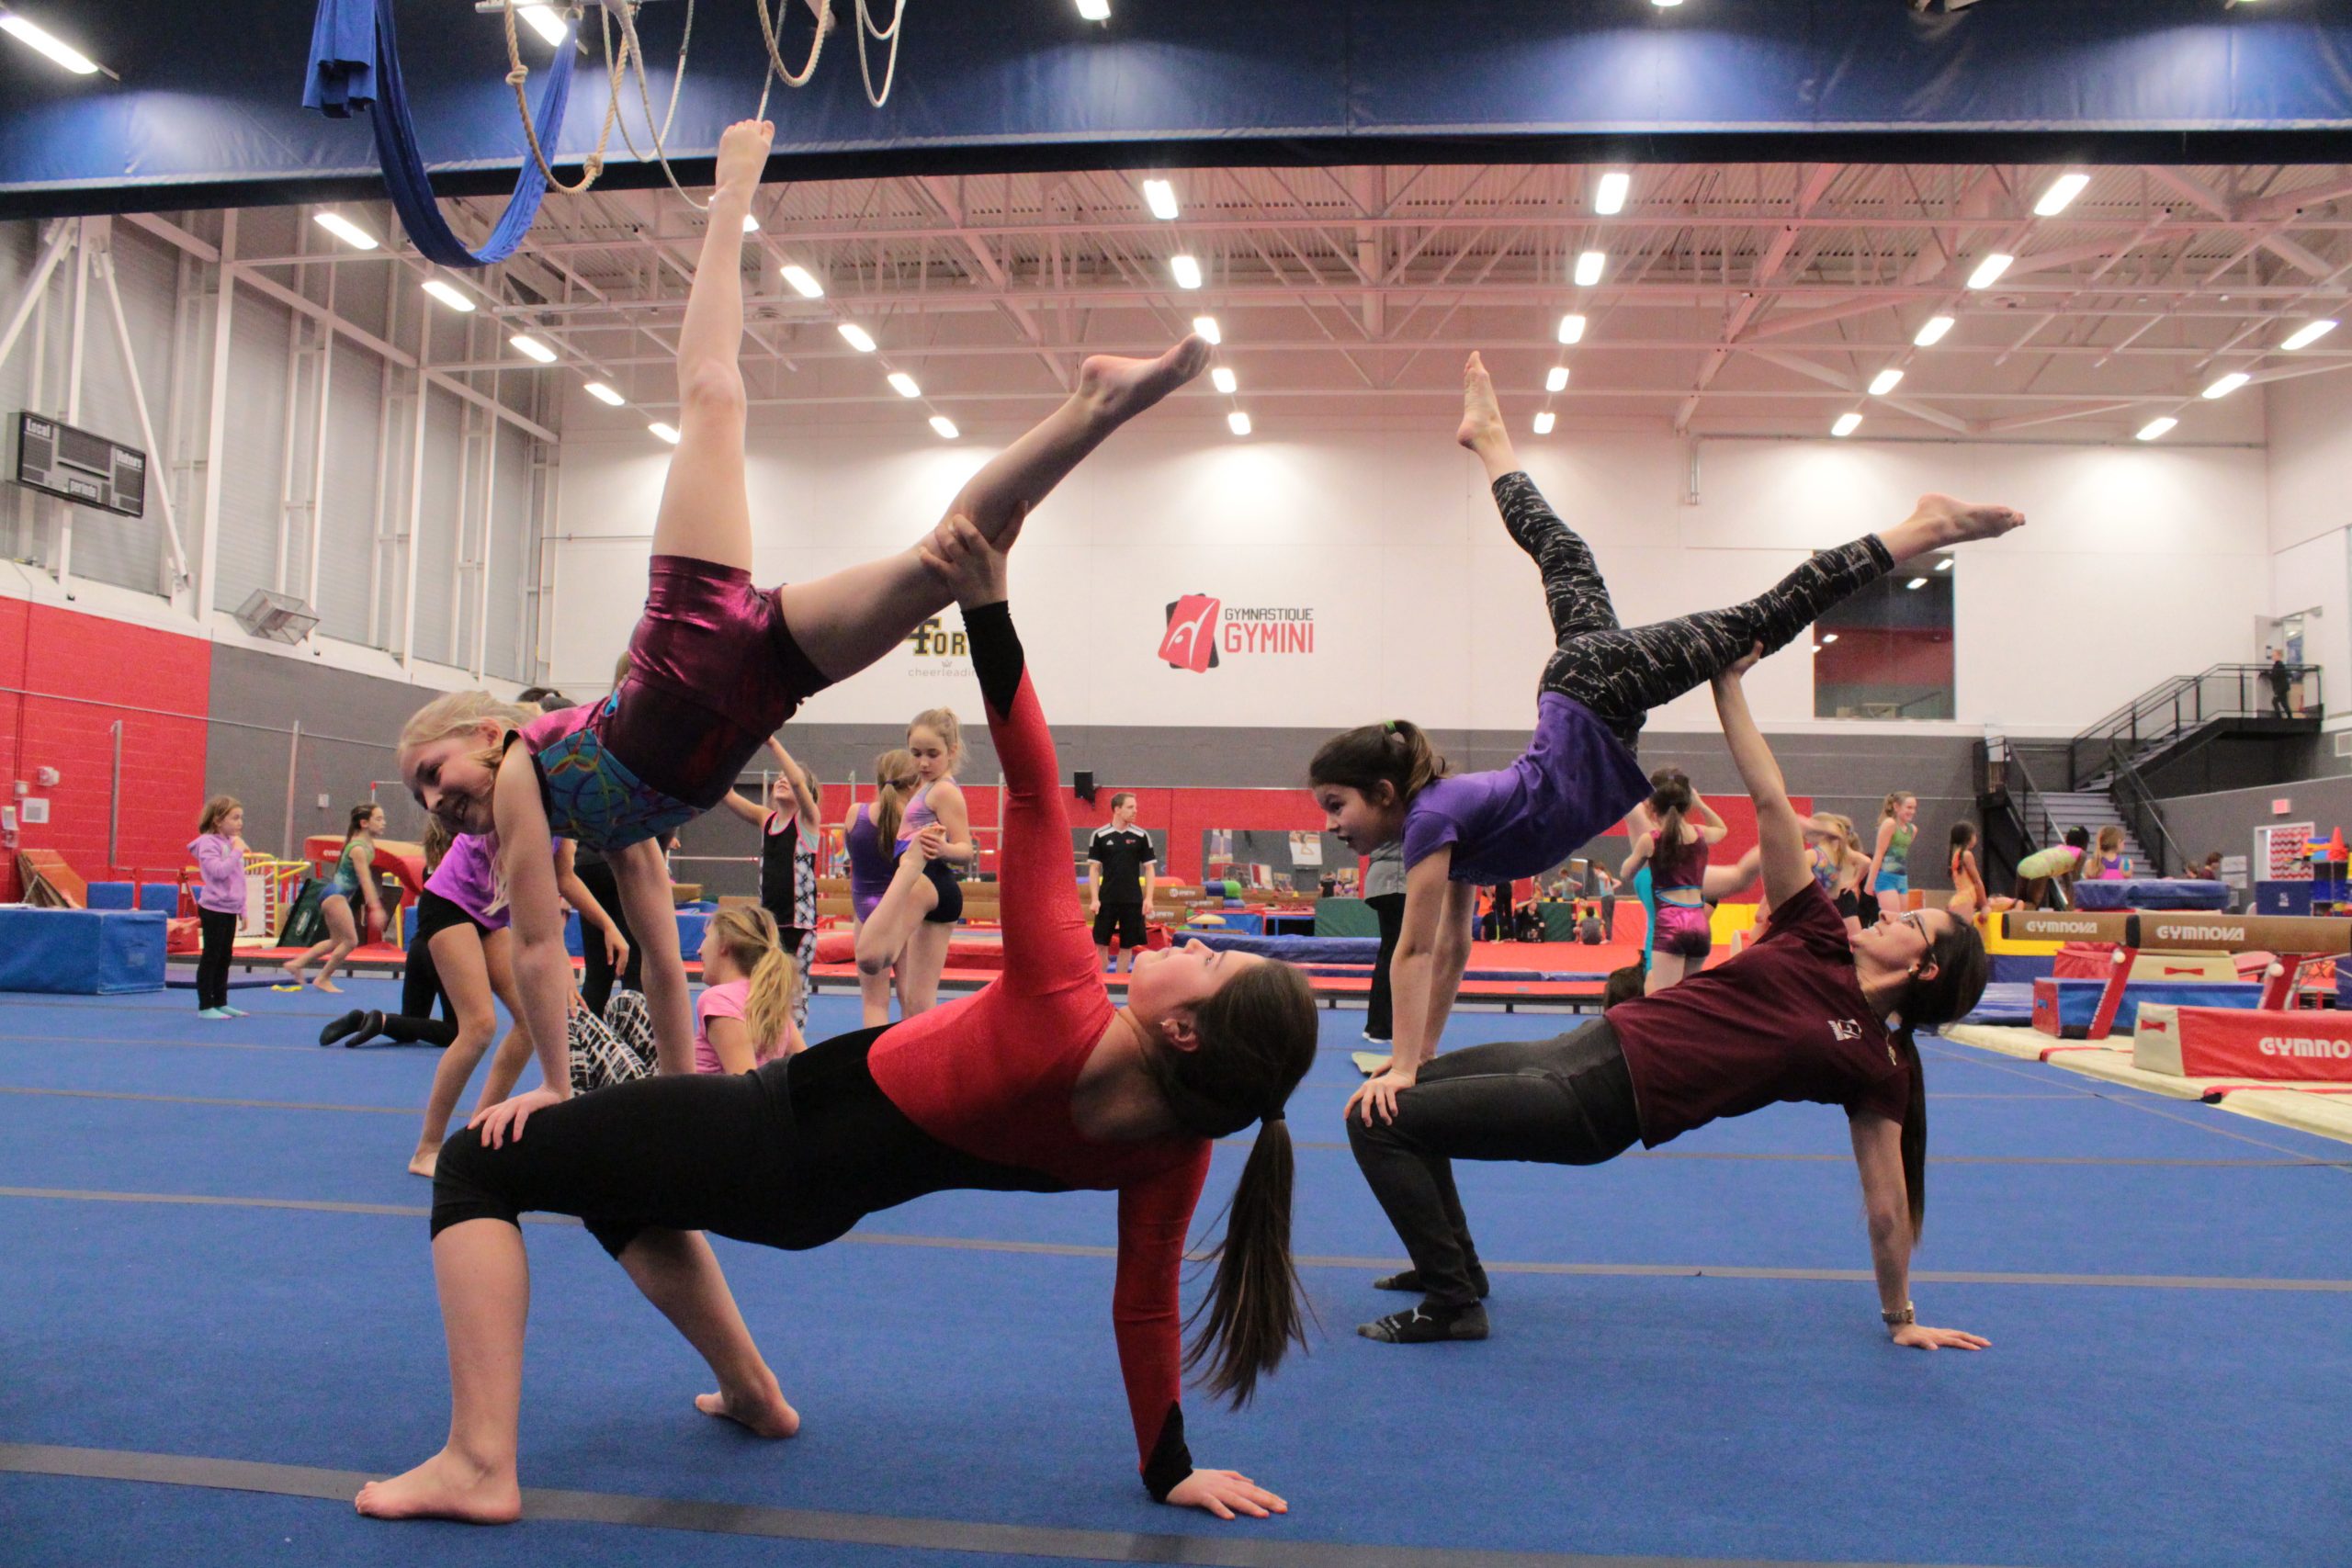 Gymnastique acrobatique | Gymini